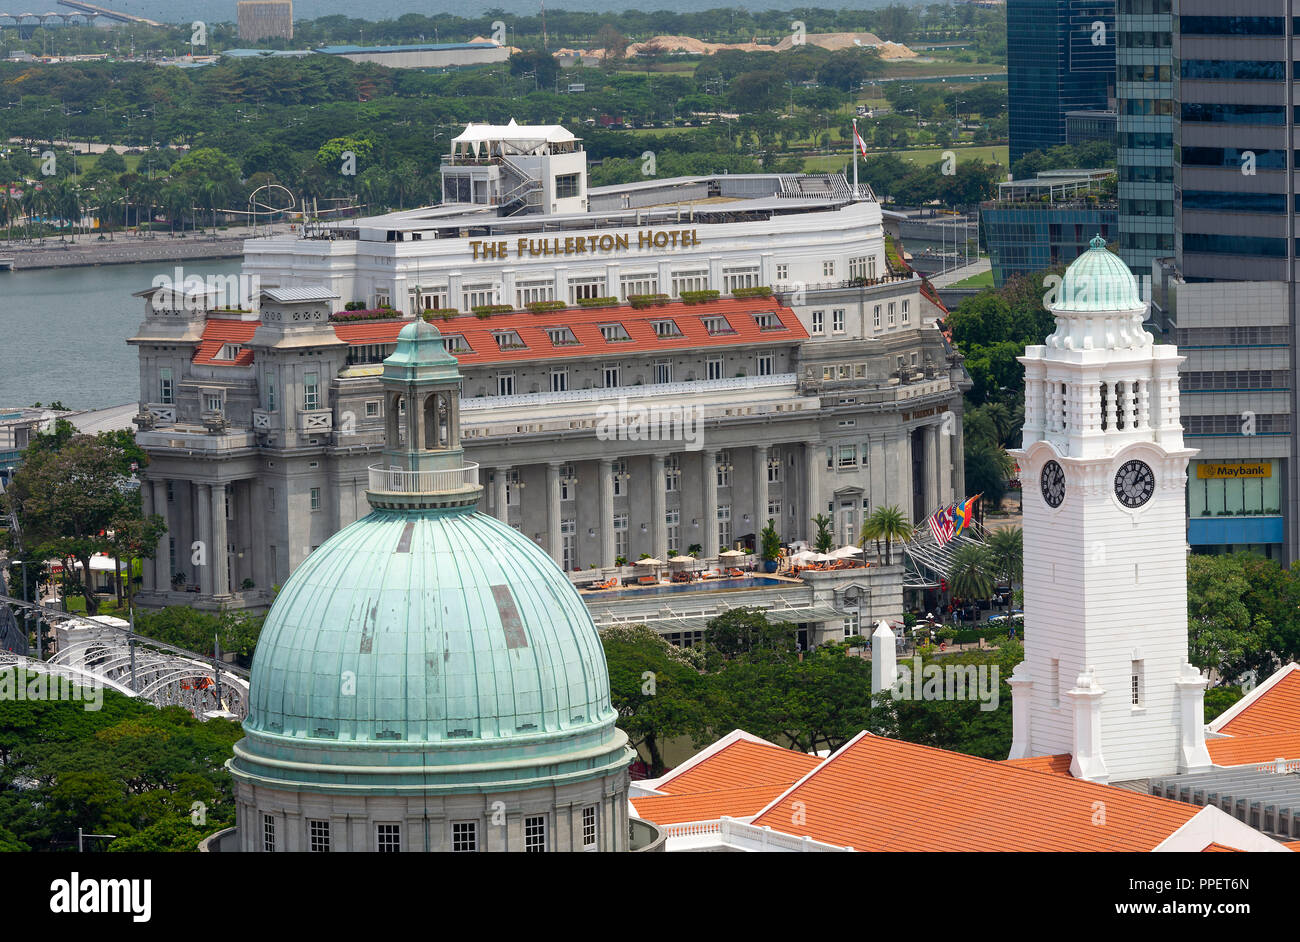 Luftaufnahme des luxuriösen Fullerton Hotel mit Blick auf die Marina Bay und den Singapore River in Singapur Republik Singapur Asien Stockfoto